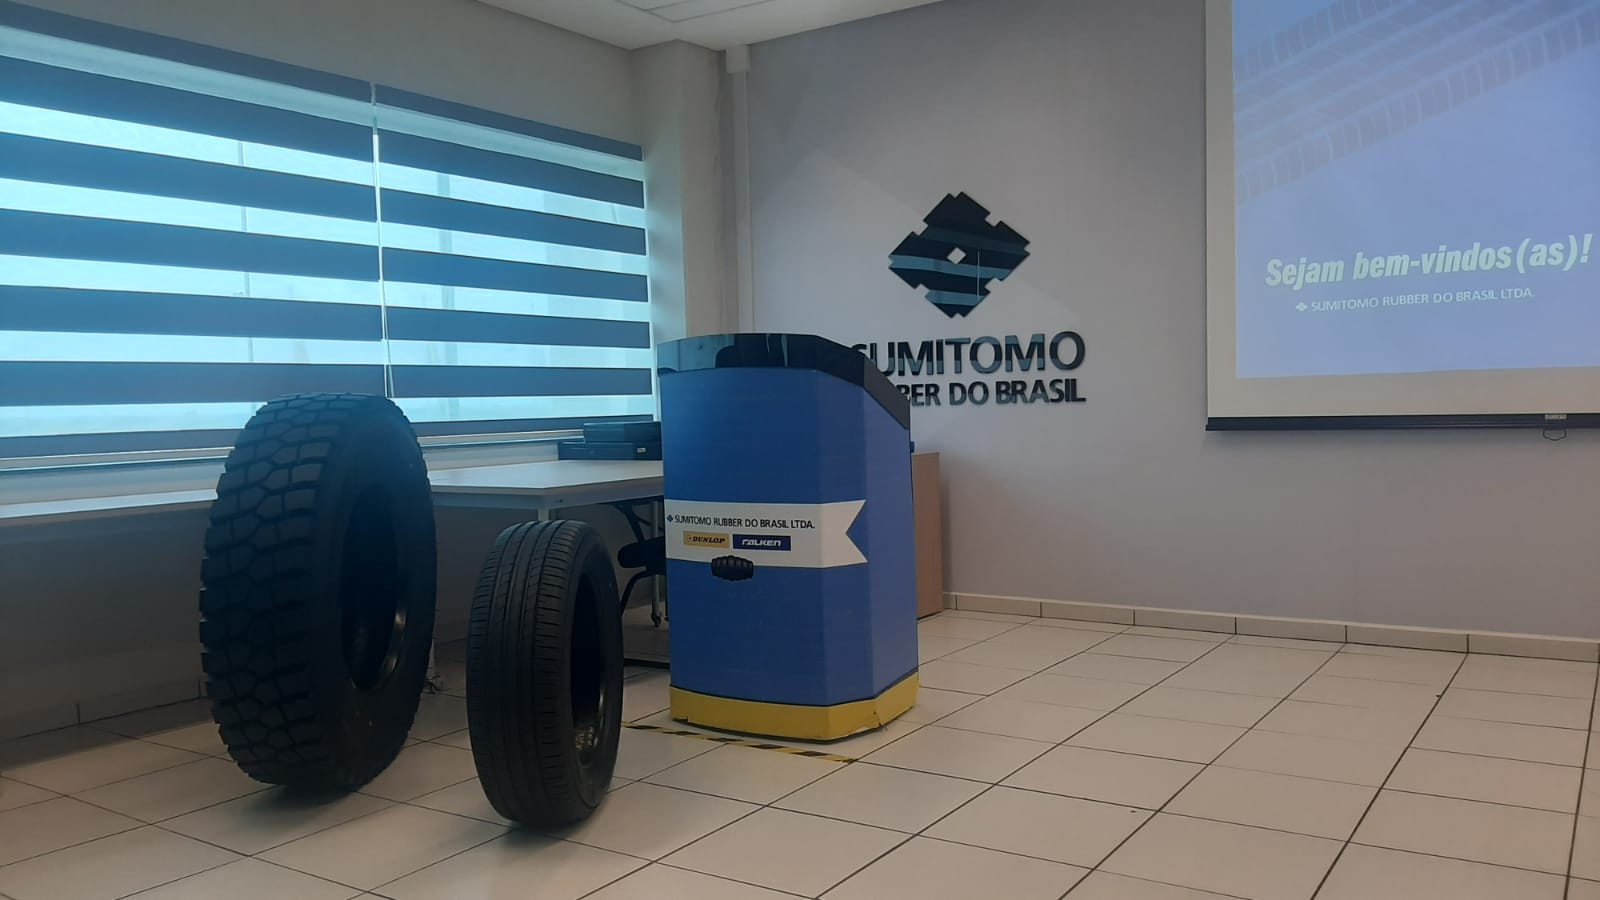 Sumitomo Rubber quer produzir 50% mais pneus até 2029 no Brasil - News Rondônia